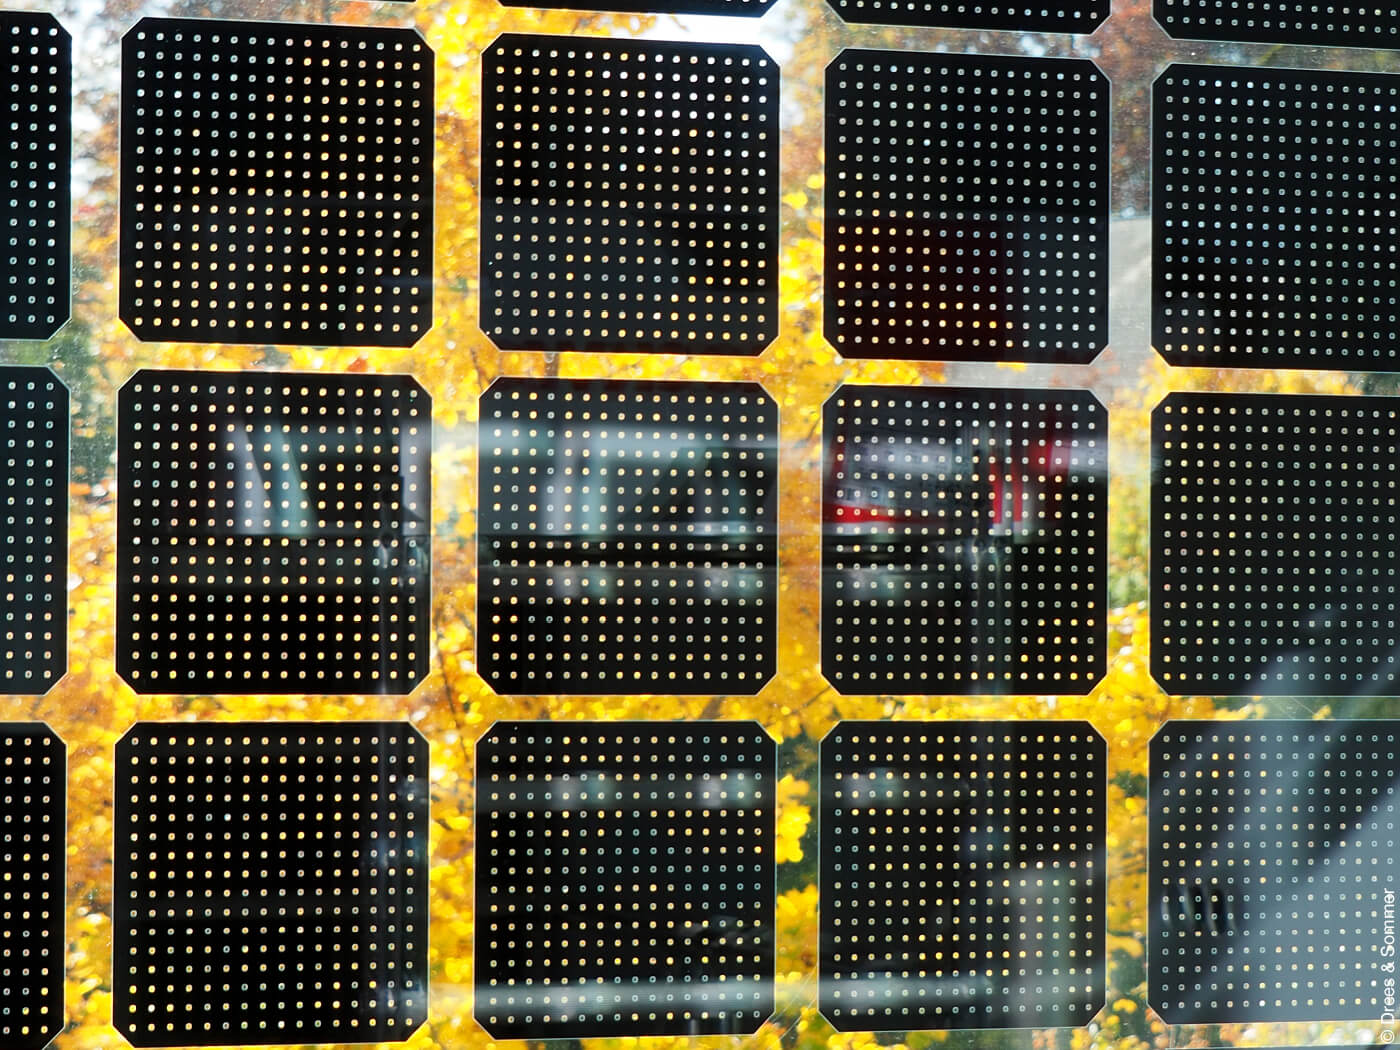 Solarzellen auf Glasscheibe